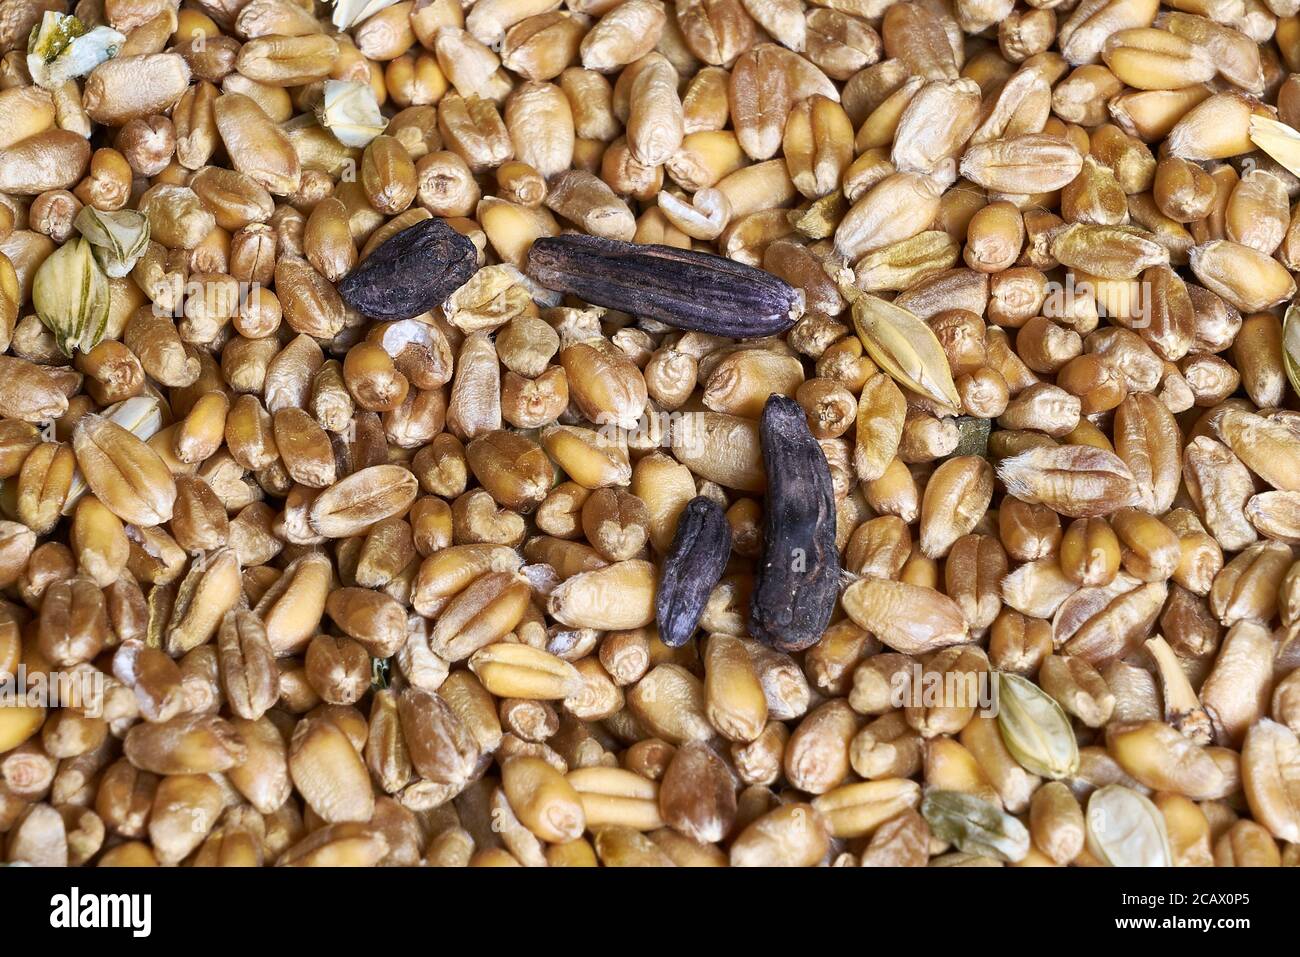 Ergot Claviceps purpurea hongo entre los granos de trigo en almacenamiento, contiene alcaloides tóxicos un tipo alucinógeno de micotoxina que causa el ergotismo Foto de stock